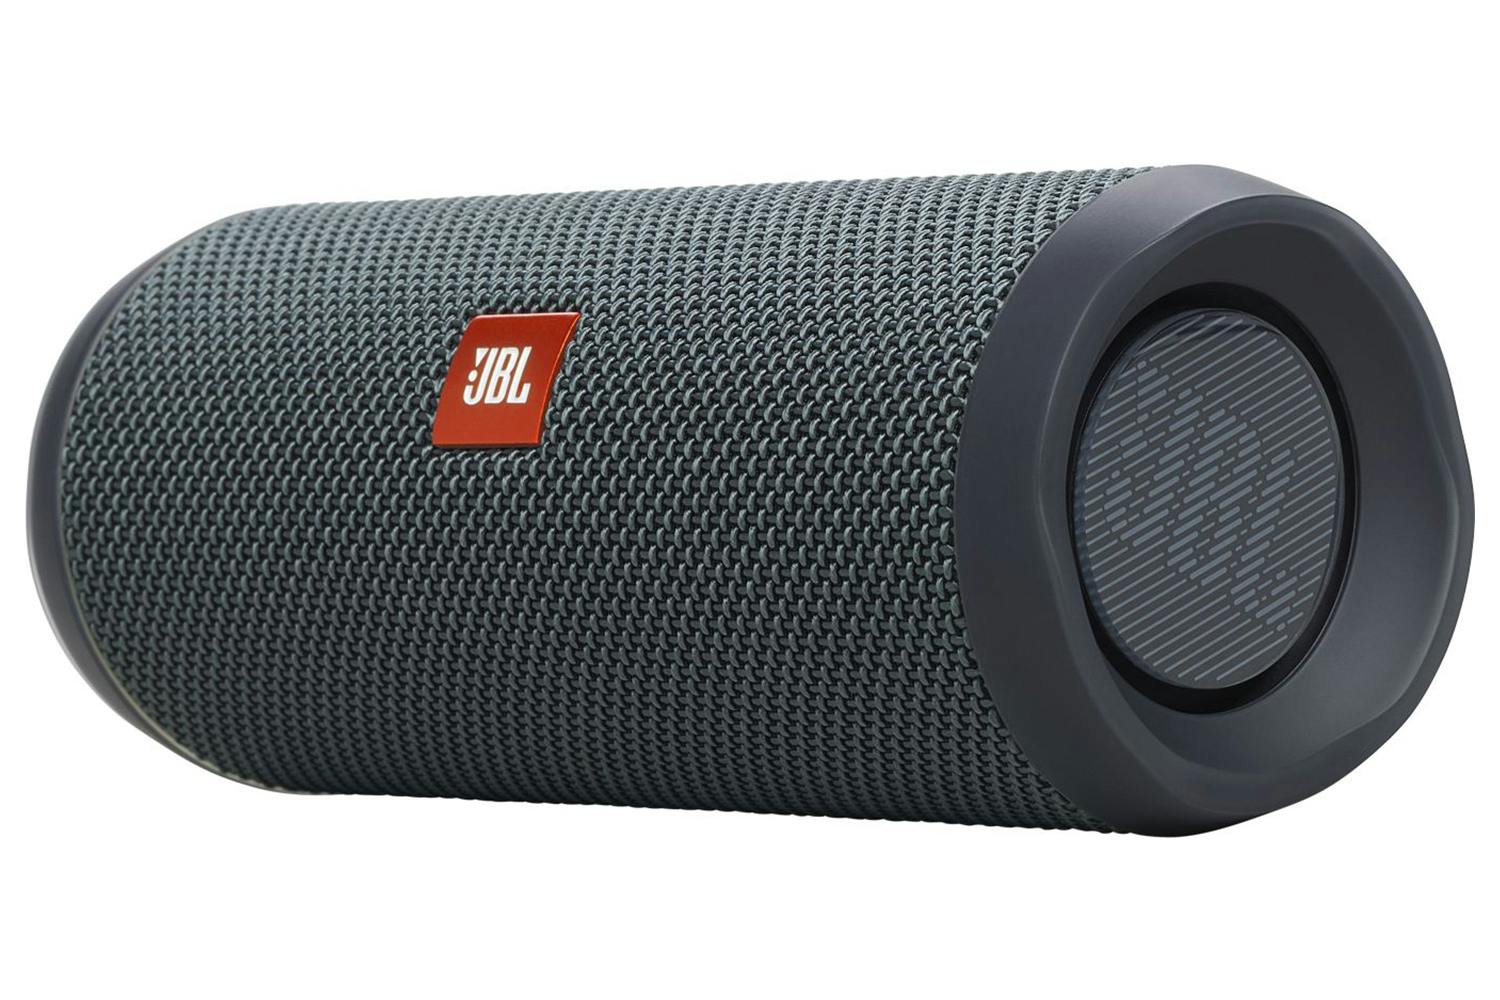 JBL Flip Essential 2  Portable Waterproof Speaker